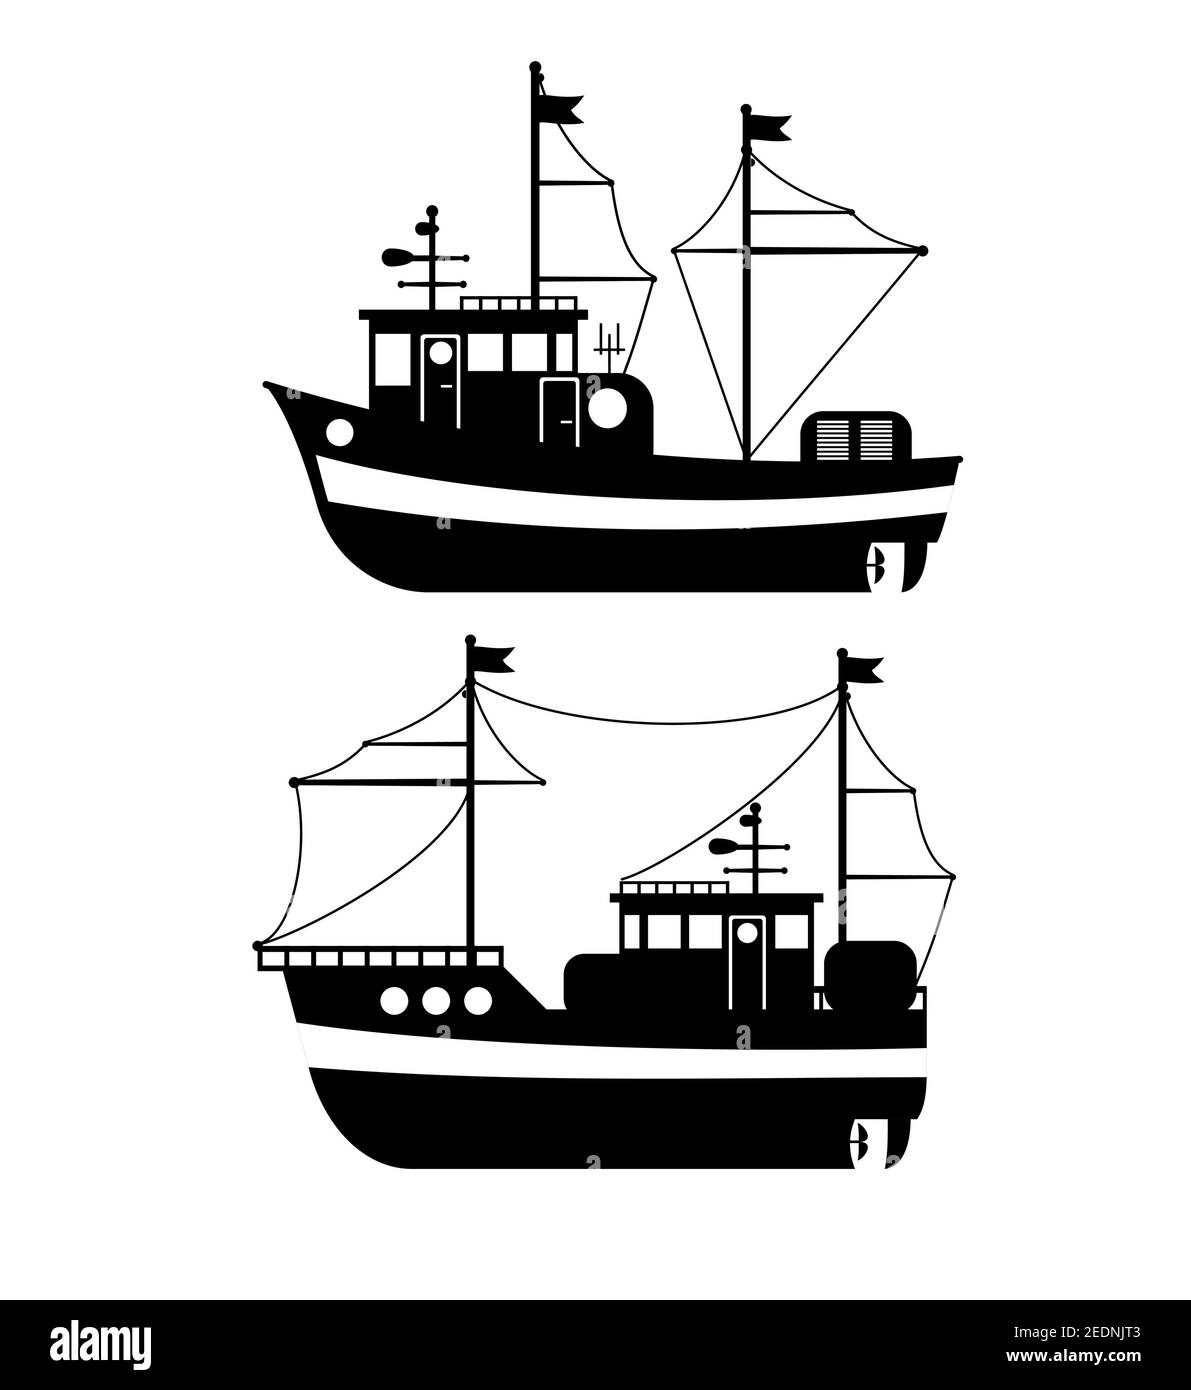 Silhouette du bateau de pêche, vue latérale, pêche commerciale Trawler, production industrielle de fruits de mer, transport par eau, transport maritime ou maritime Illustration de Vecteur